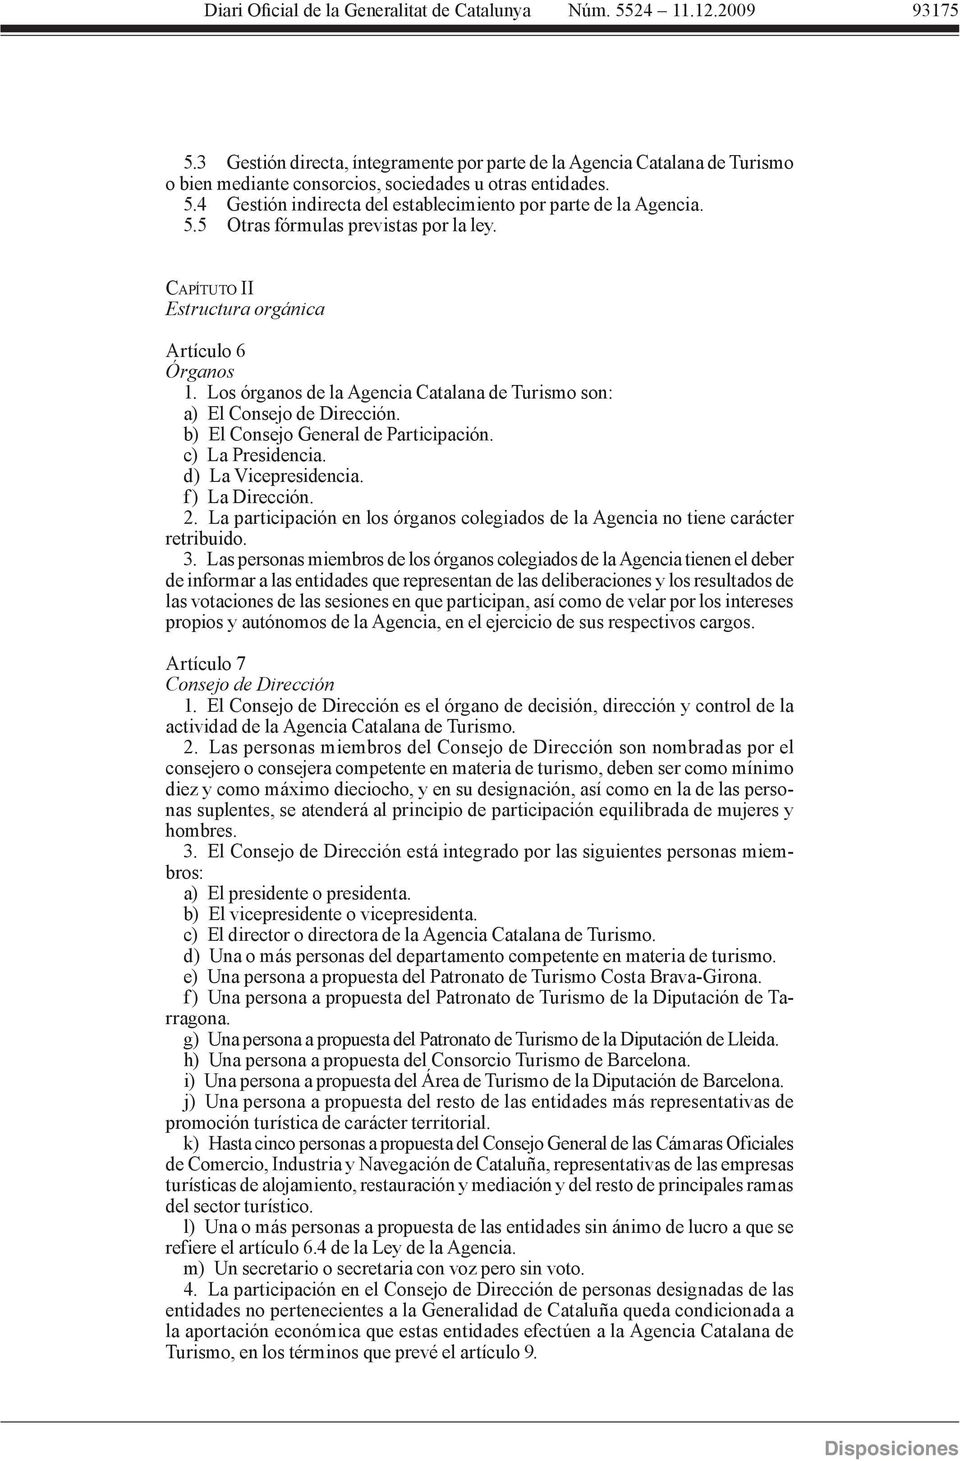 5.5 Otras fórmulas previstas por la ley. CAPÍTUTO II Estructura orgánica Artículo 6 Órganos 1. Los órganos de la Agencia Catalana de Turismo son: a) El Consejo de Dirección.